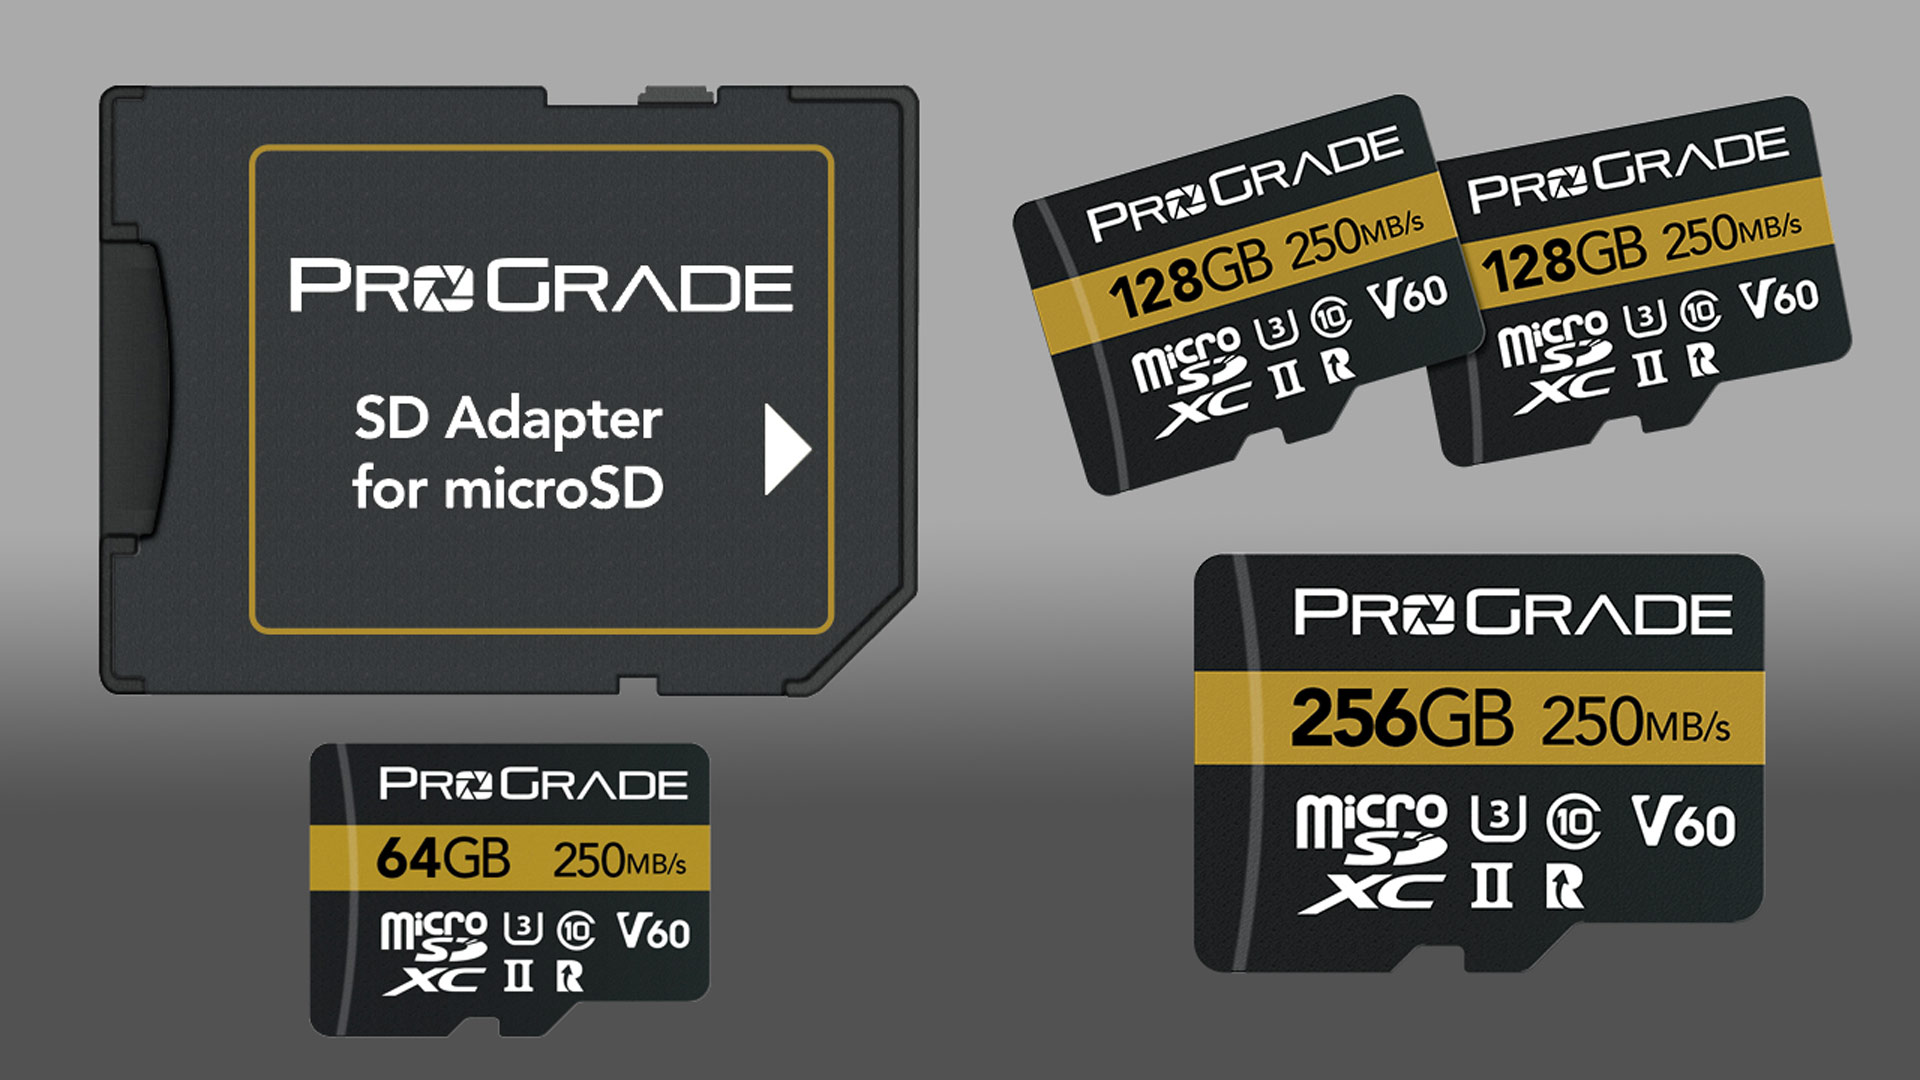 Presentaron las nuevas tarjetas de memoria ProGrade MicroSDXC V60: mejoras en las velocidades de escritura y lectura